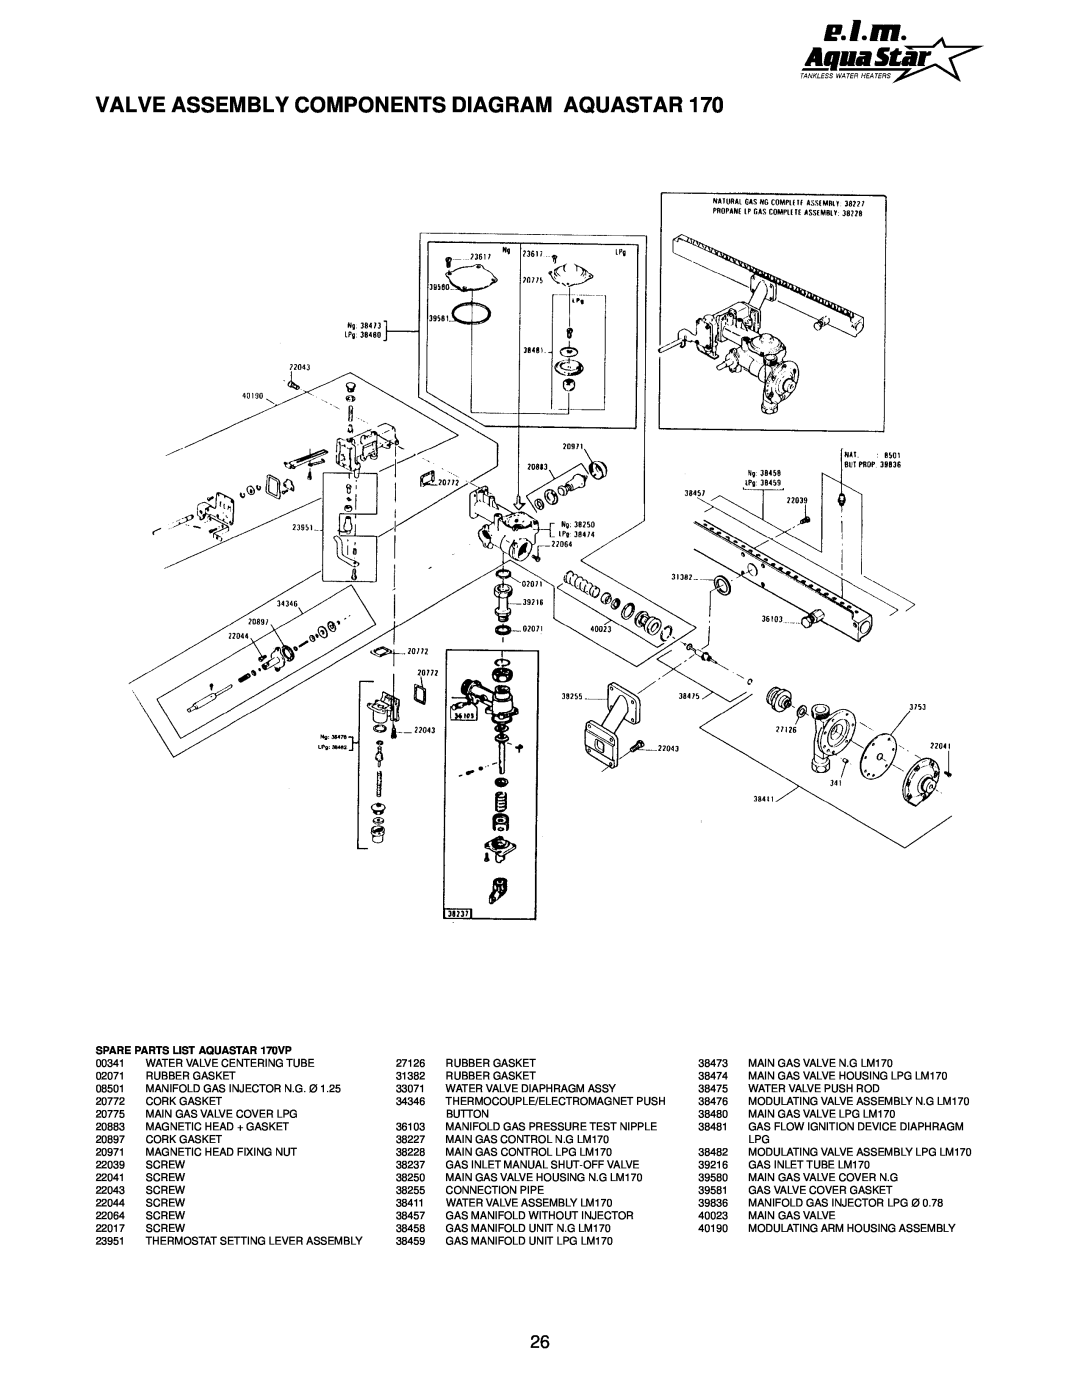 AquaStar 170 VP manual Valve Assembly Components Diagram Aquastar, SPARE PARTS LIST AQUASTAR 170VP 